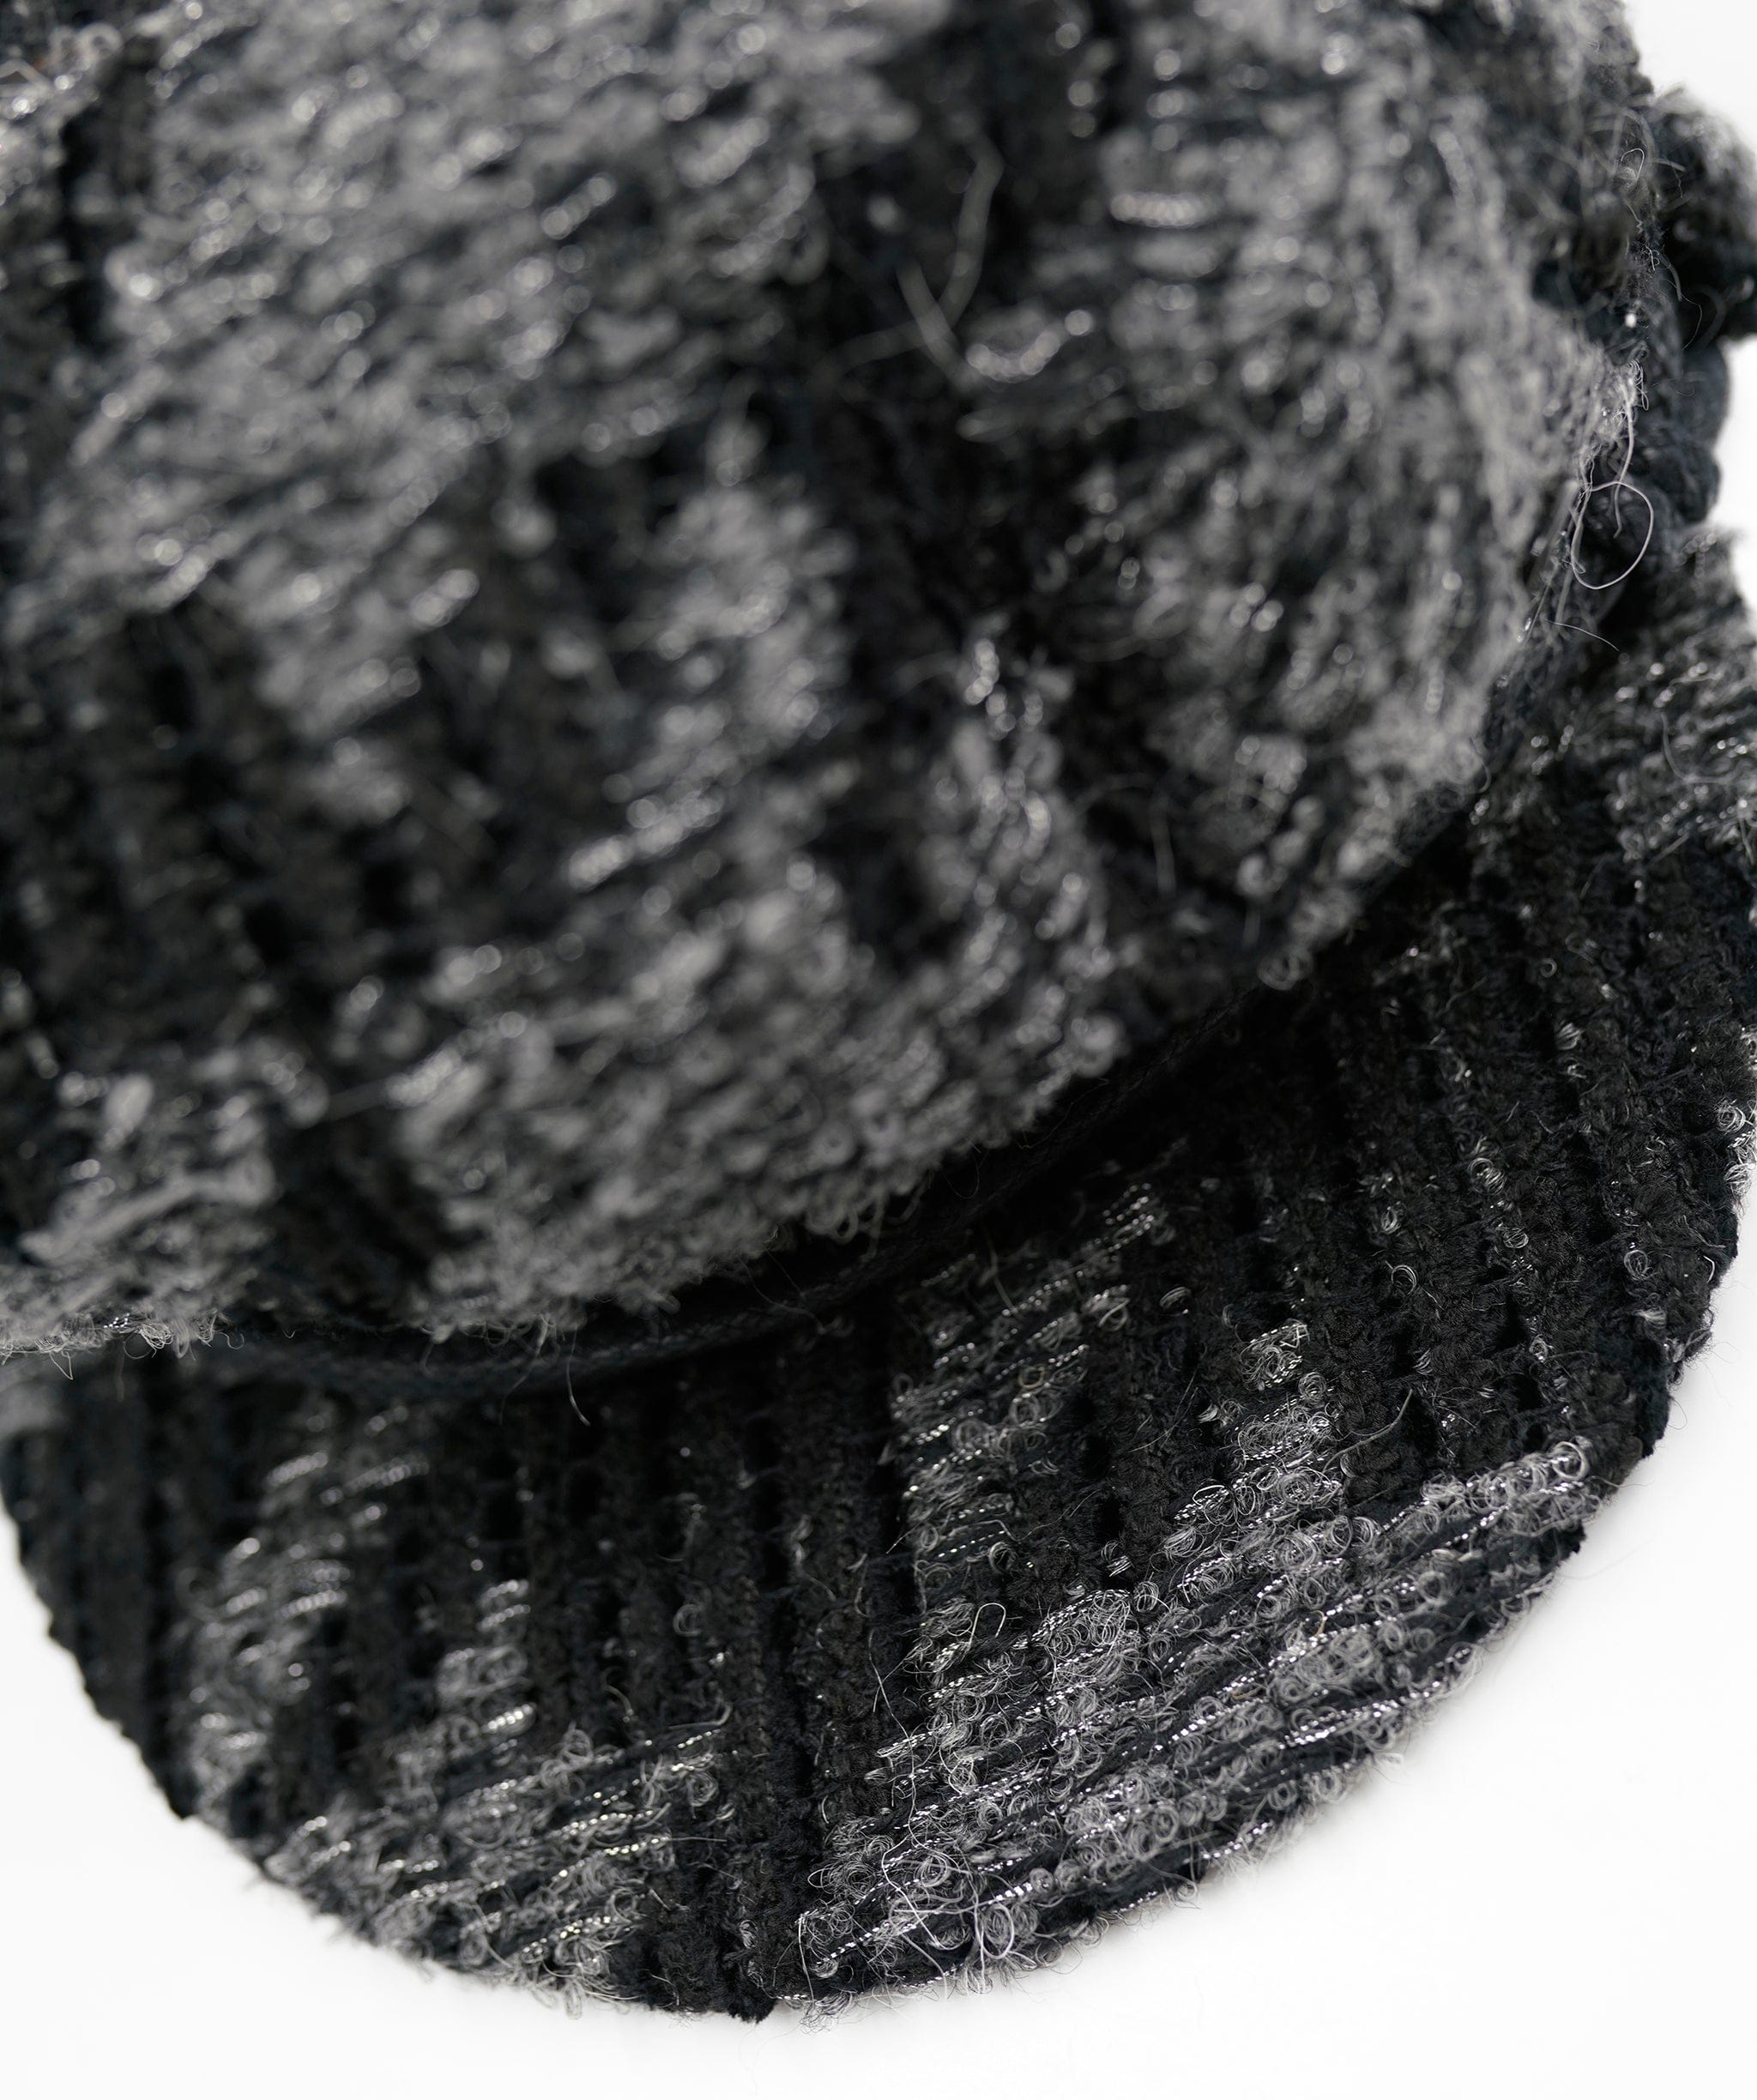 Maison Michel Maison Michel Pied de Poule tweed black and grey hat ASL5079